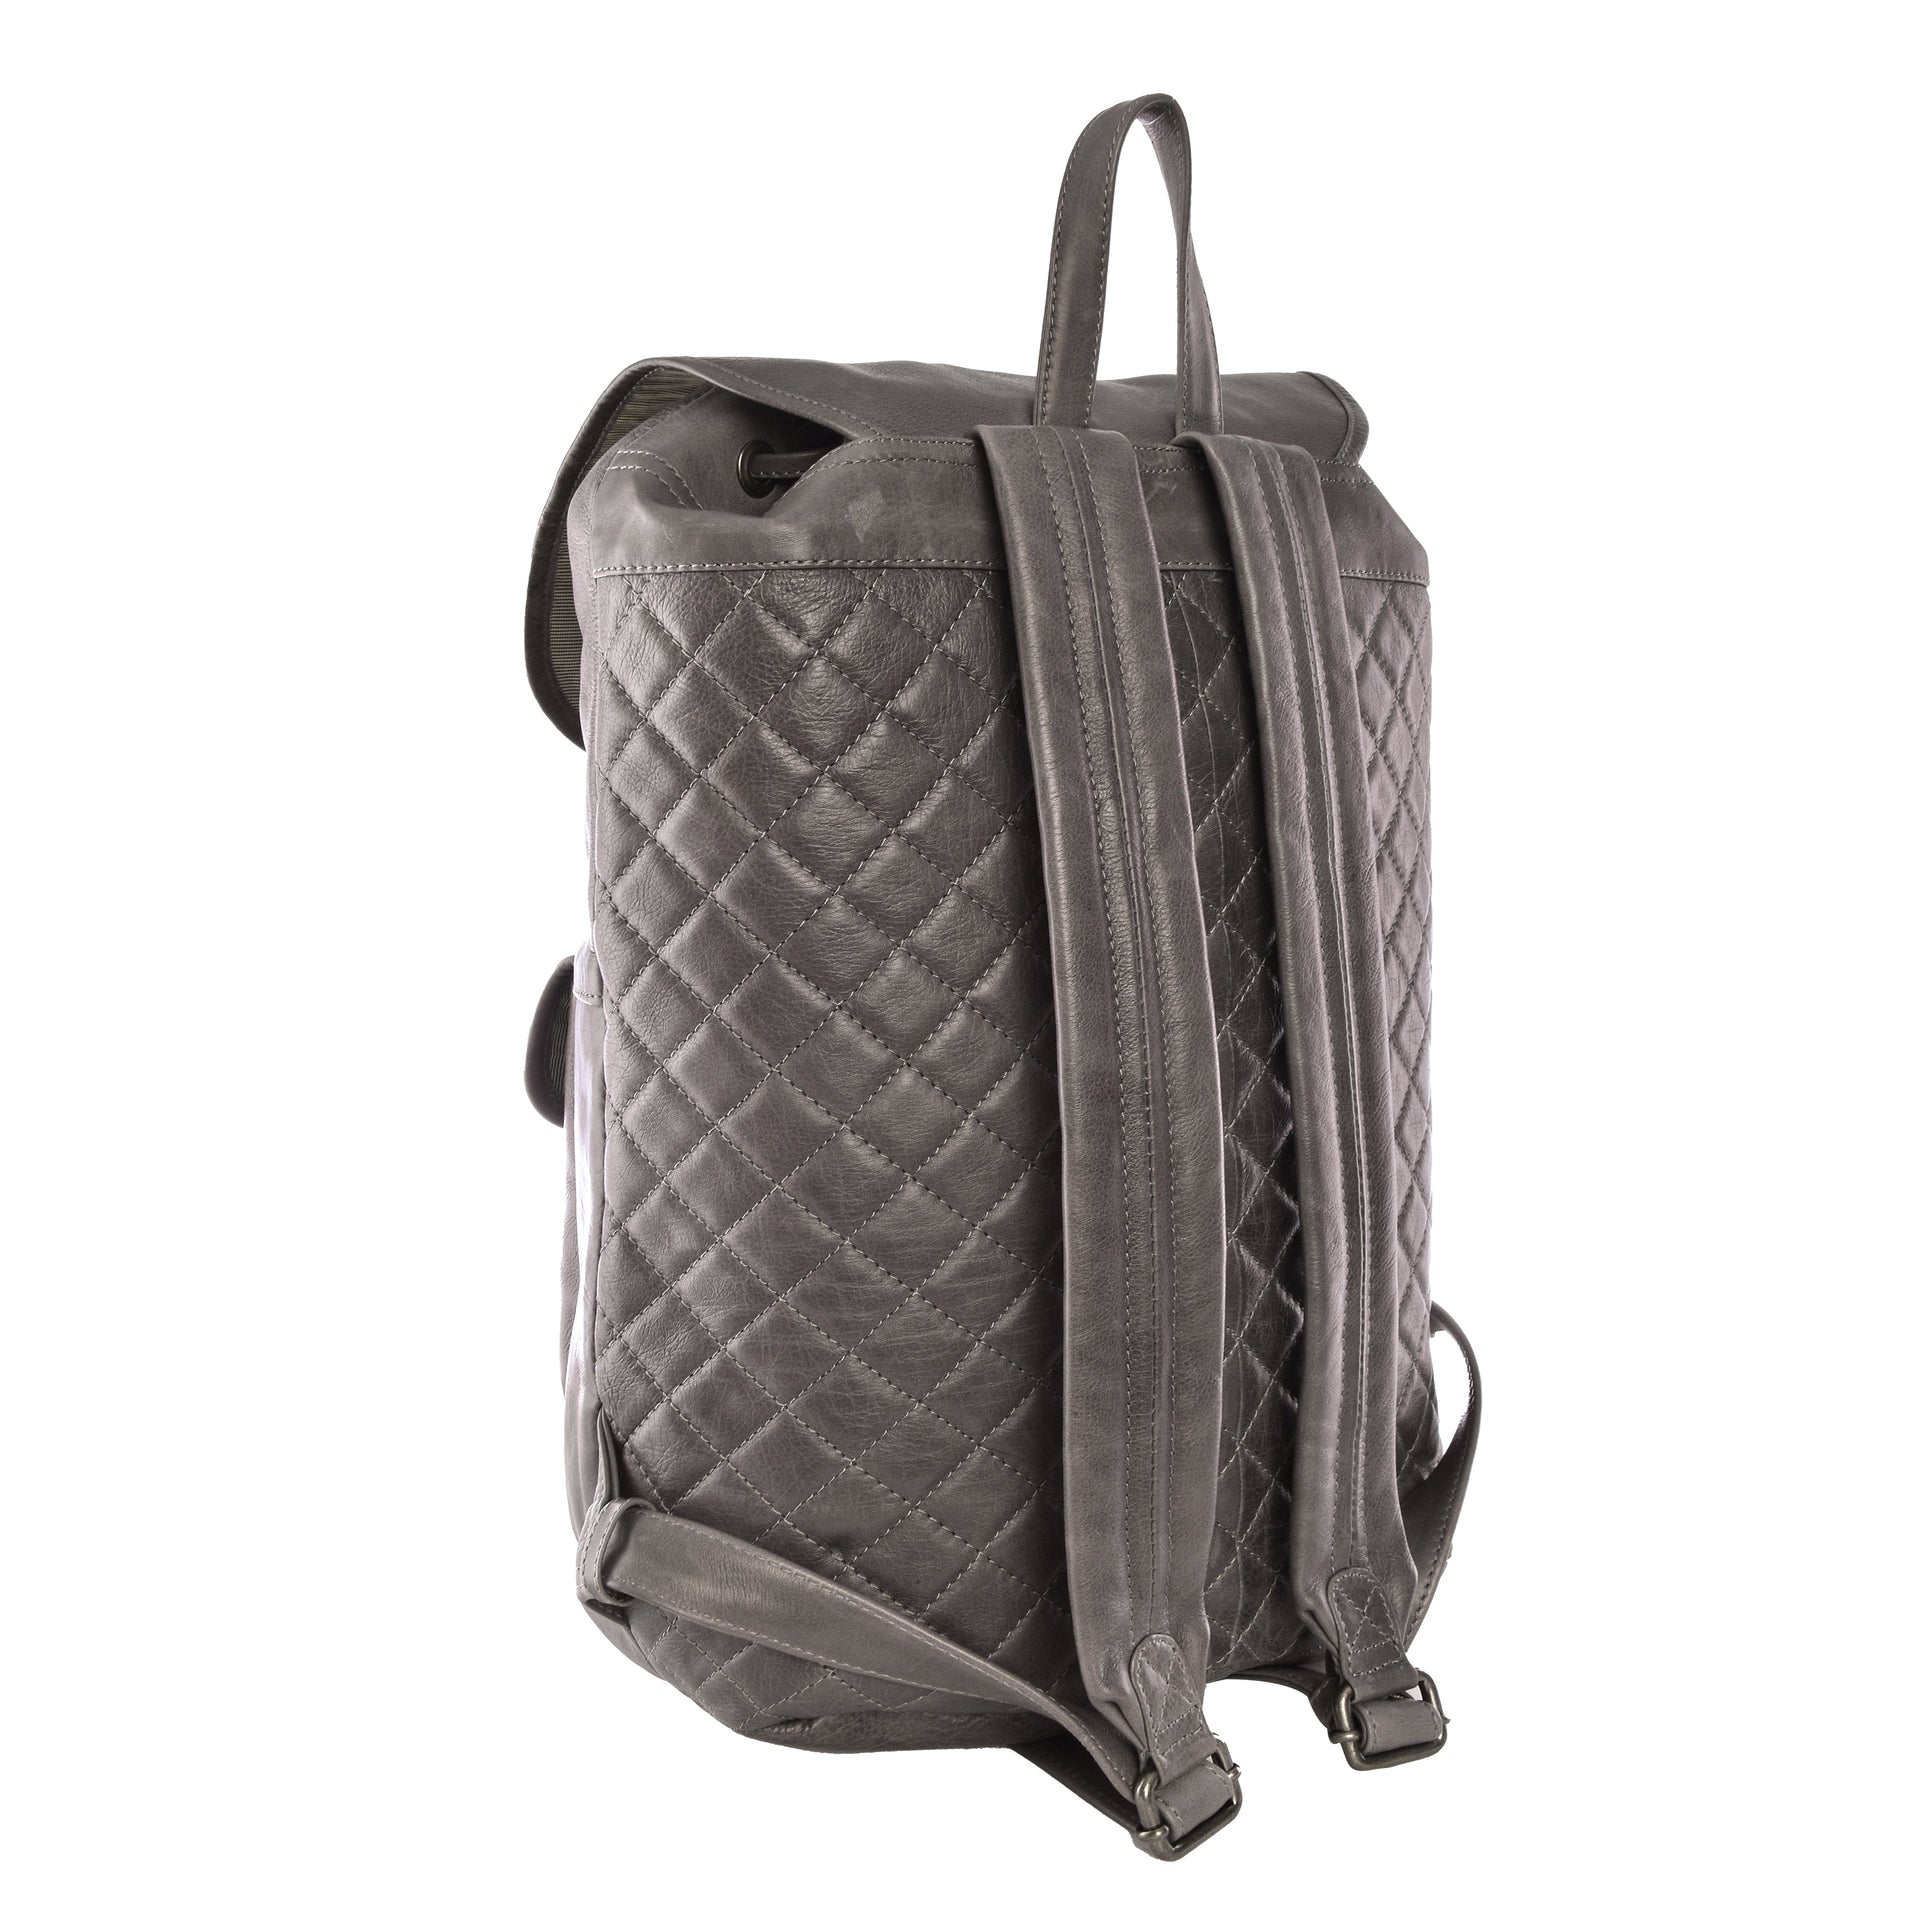 Spruce Backpack - Backpack